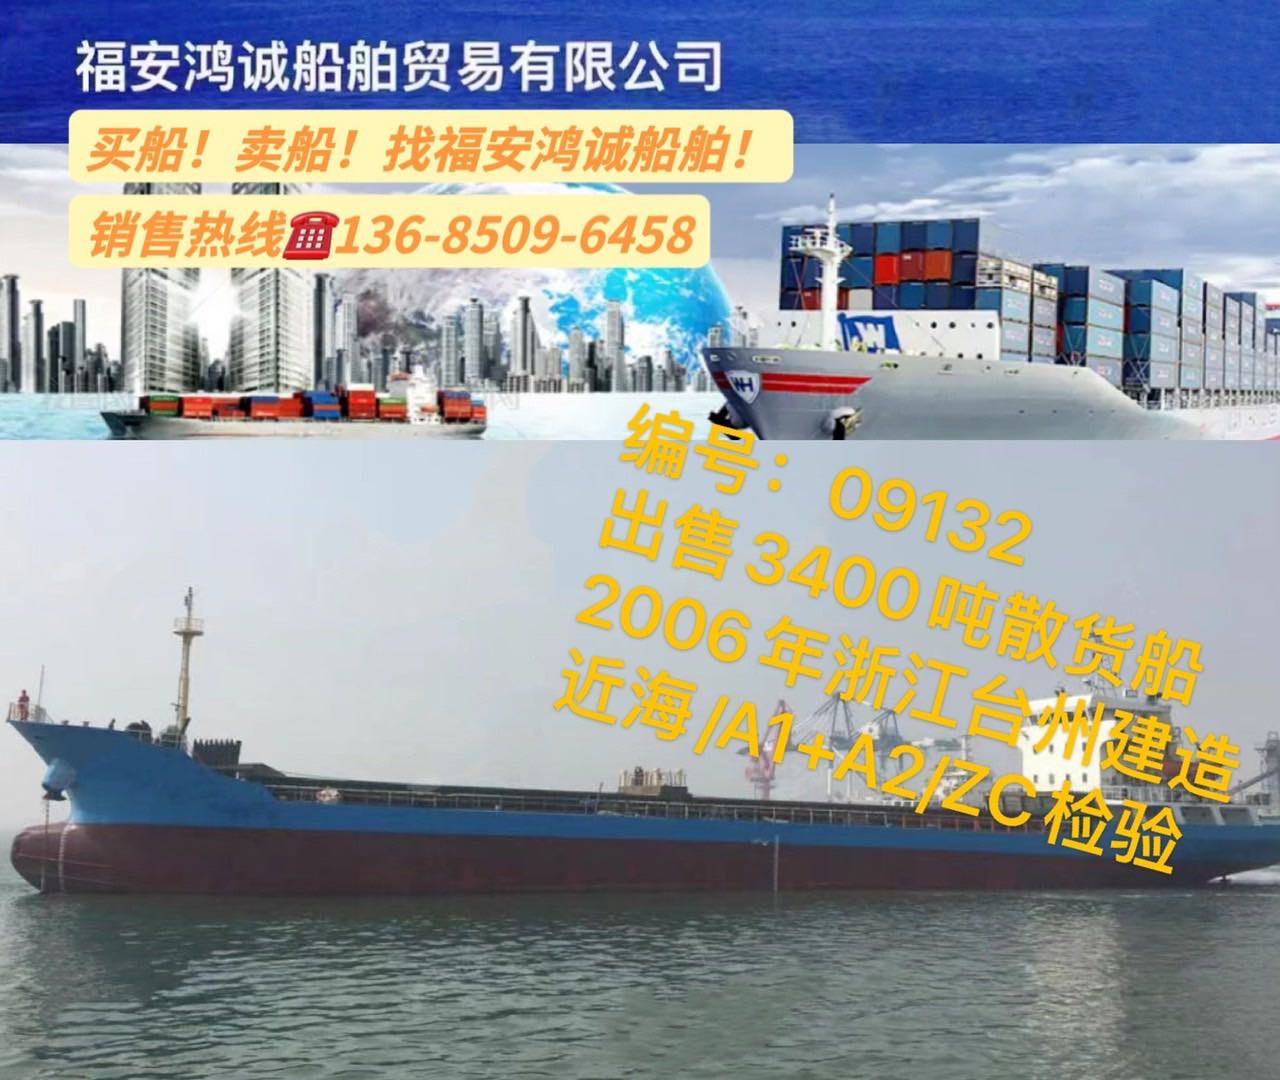 低价出售多艘3300多吨在航货船